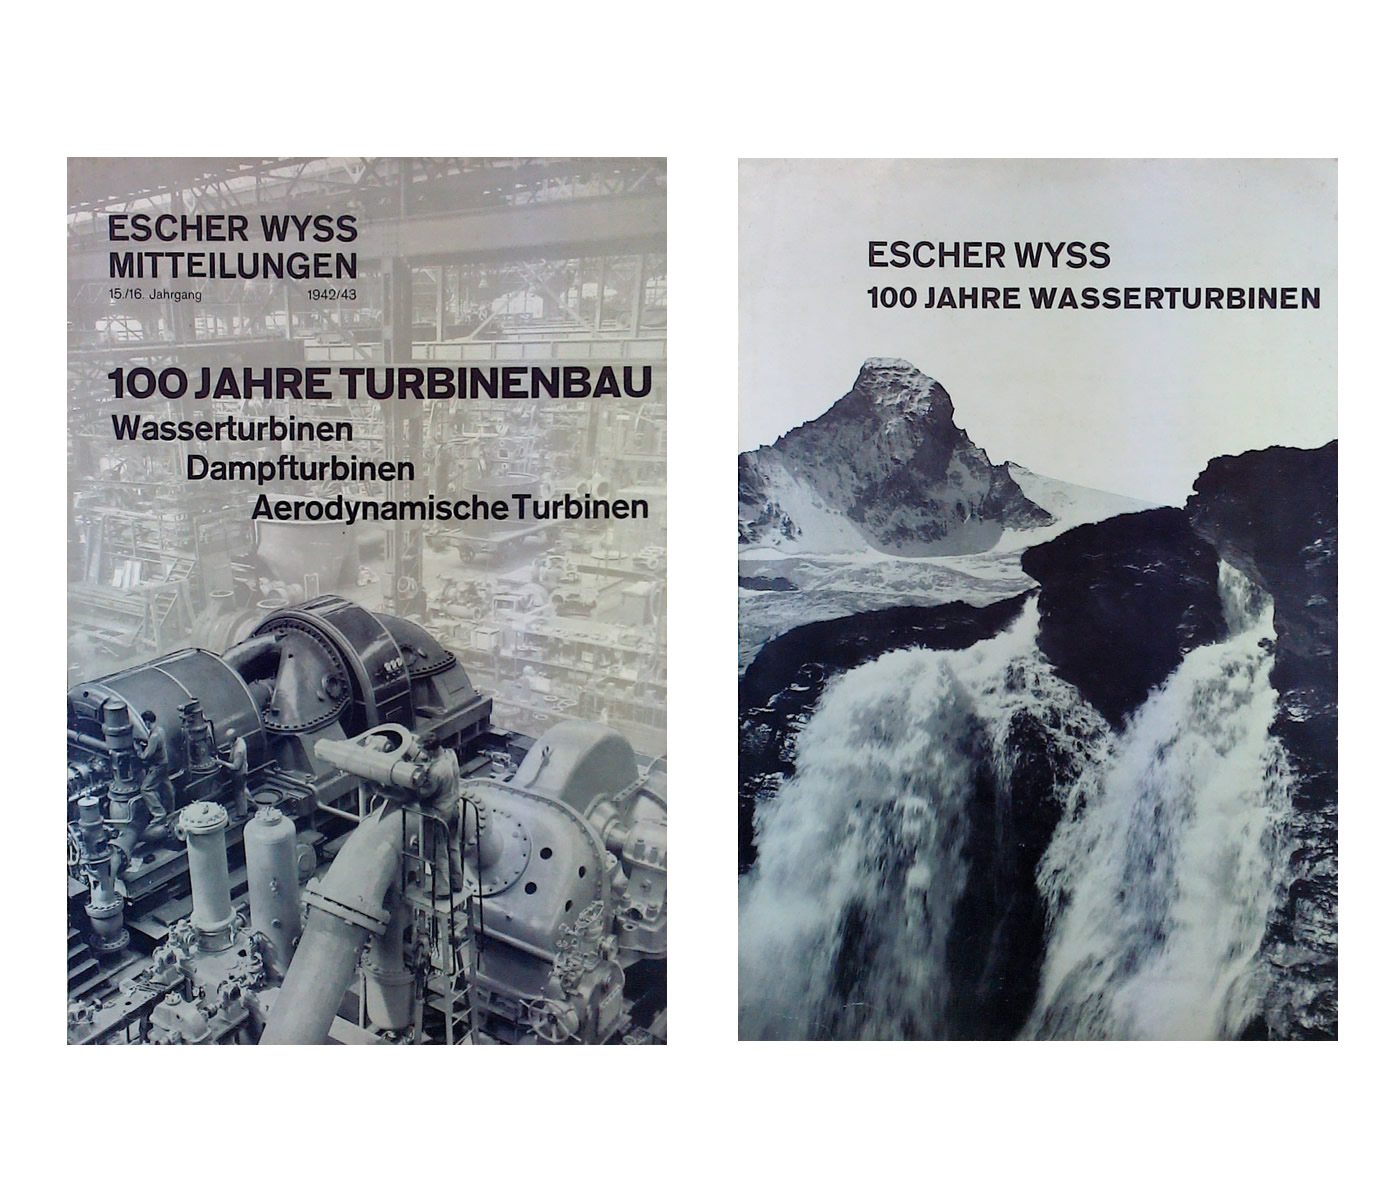 Richard Paul Lohse: Escher Wyss Mitteilungen. 15./16. Jahrgang 1942/43, 100 Jahre Turbinenbau, Wasserturbinen Dampfturbinen Aerodynamische Turbinen, 1943 / Escher Wyss, 100 Jahre Wasserturbinen, 1940